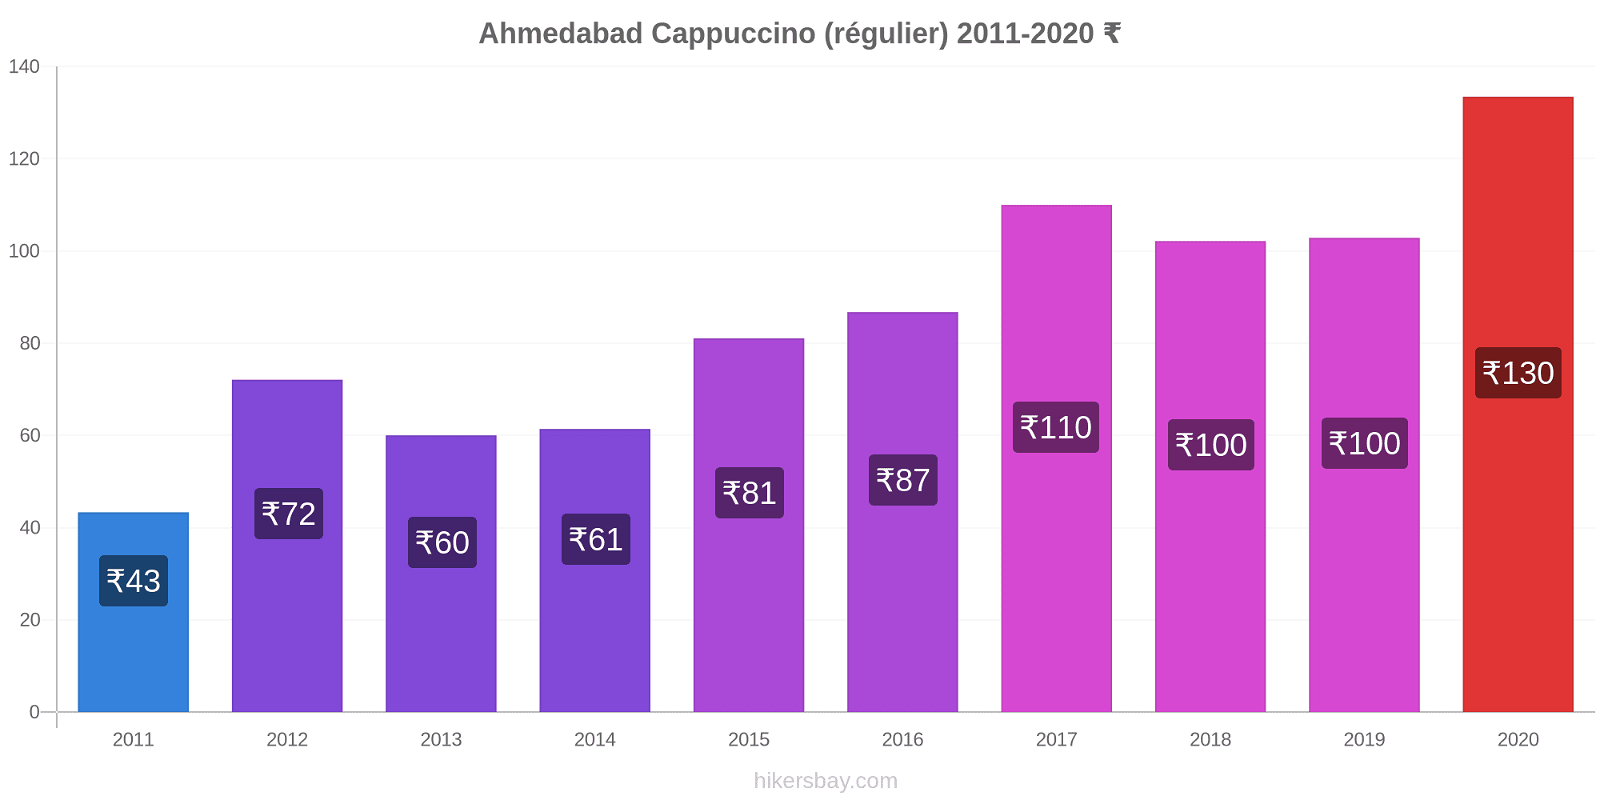 Ahmedabad changements de prix Cappuccino (régulier) hikersbay.com